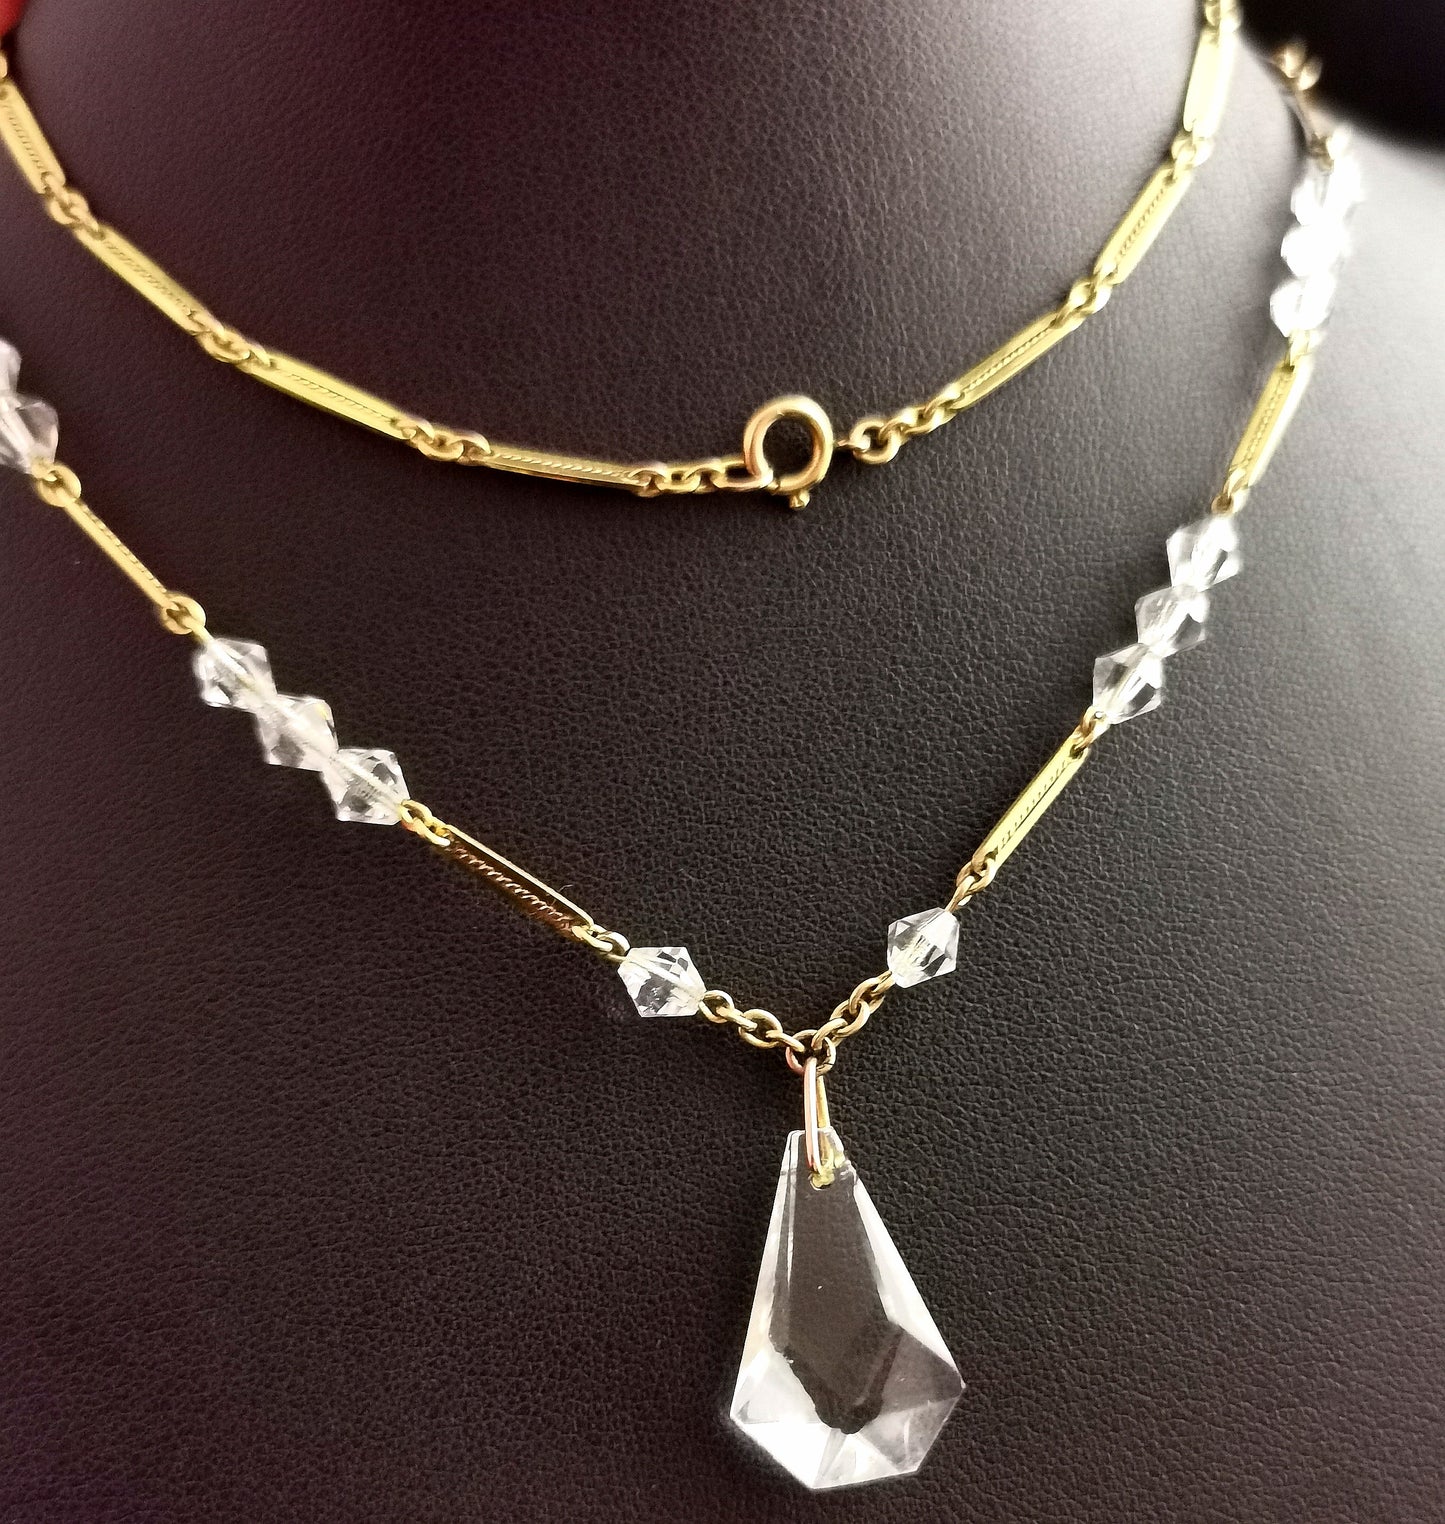 Vintage Art Deco 9ct gold Rock crystal pendant necklace, bar link